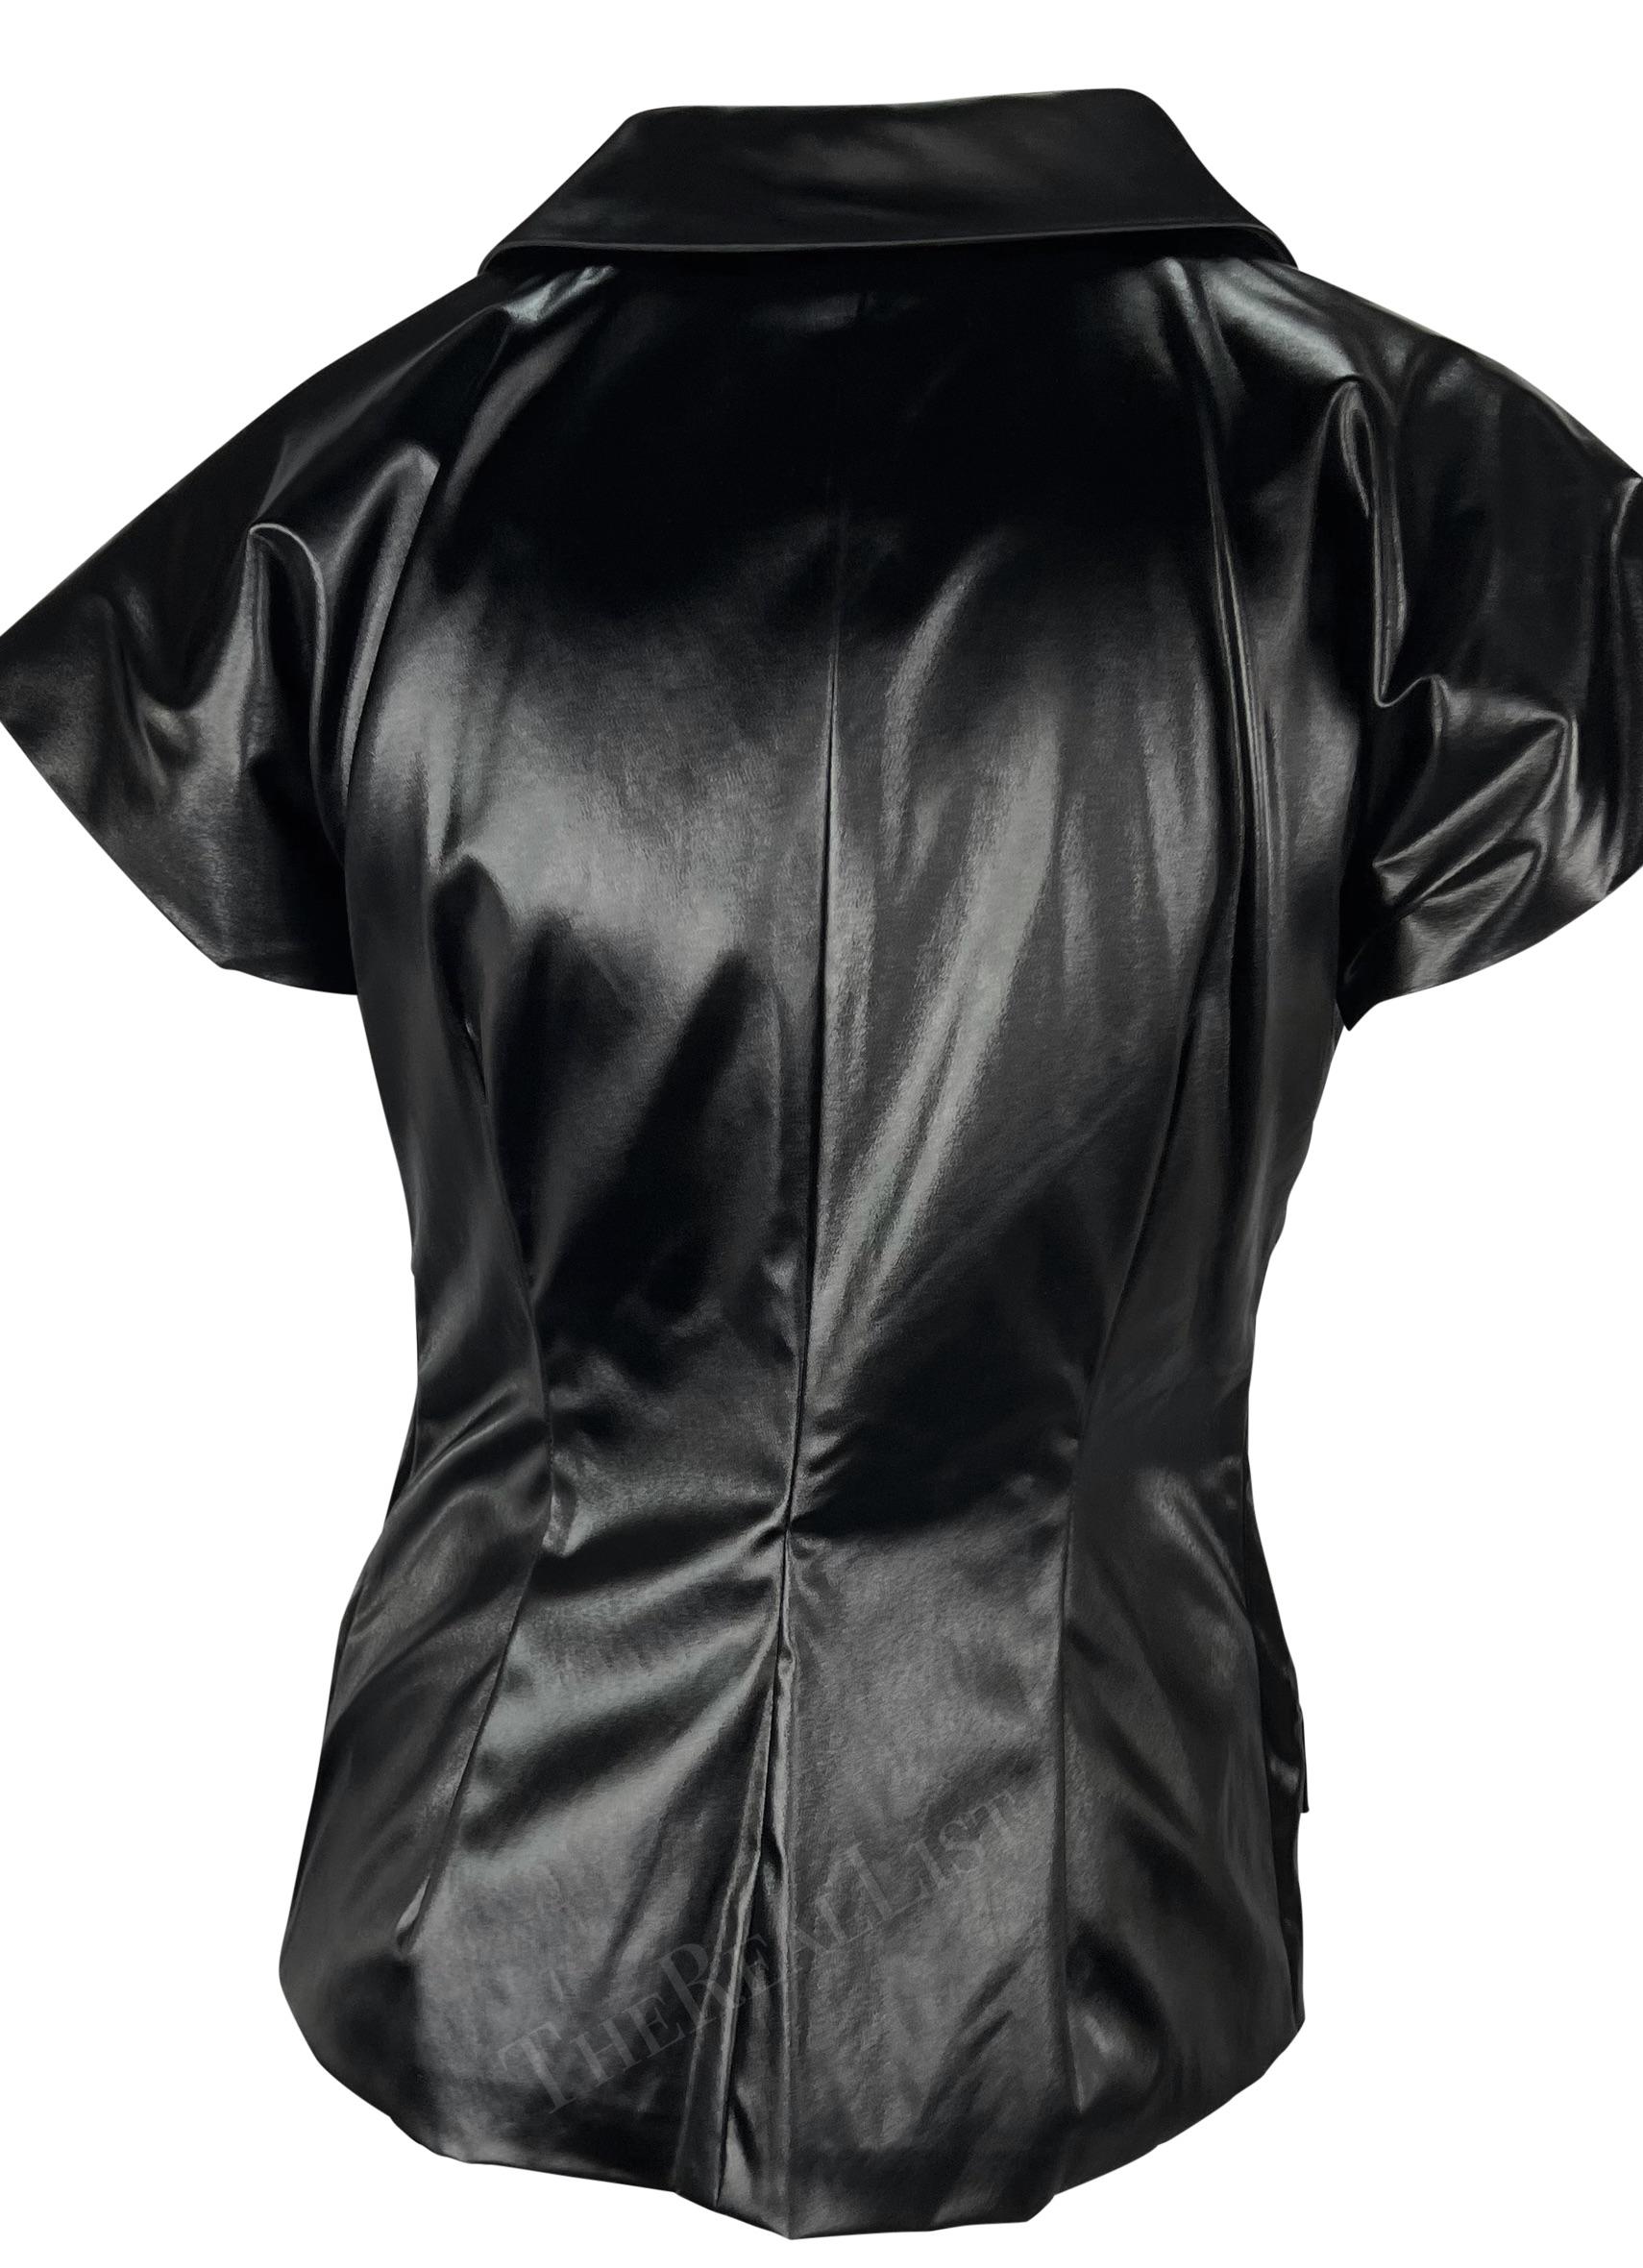 S/S 1999 Dolce & Gabbana Runway Wet Look Short Sleeve Black Jacket Top For Sale 1